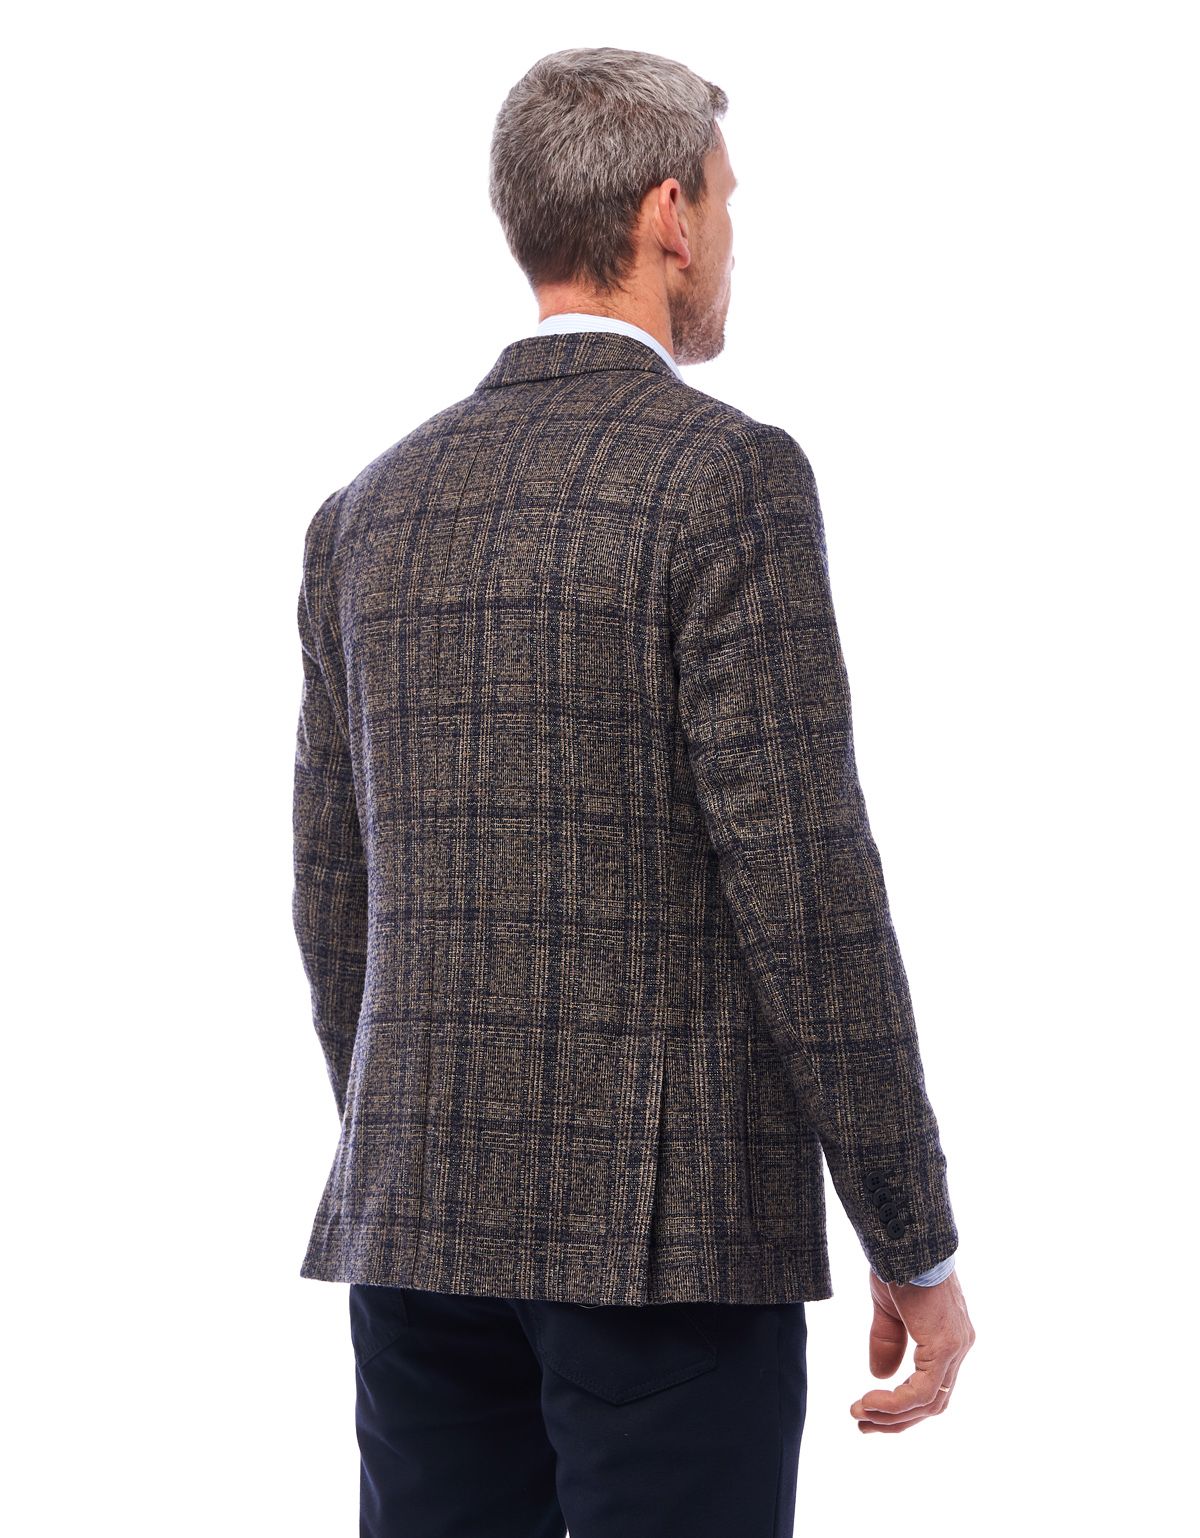 Пиджак мужской шерстяной в клетку Roy Robson с 2 шлицами, modern fit | купить в интернет-магазине Olymp-Men